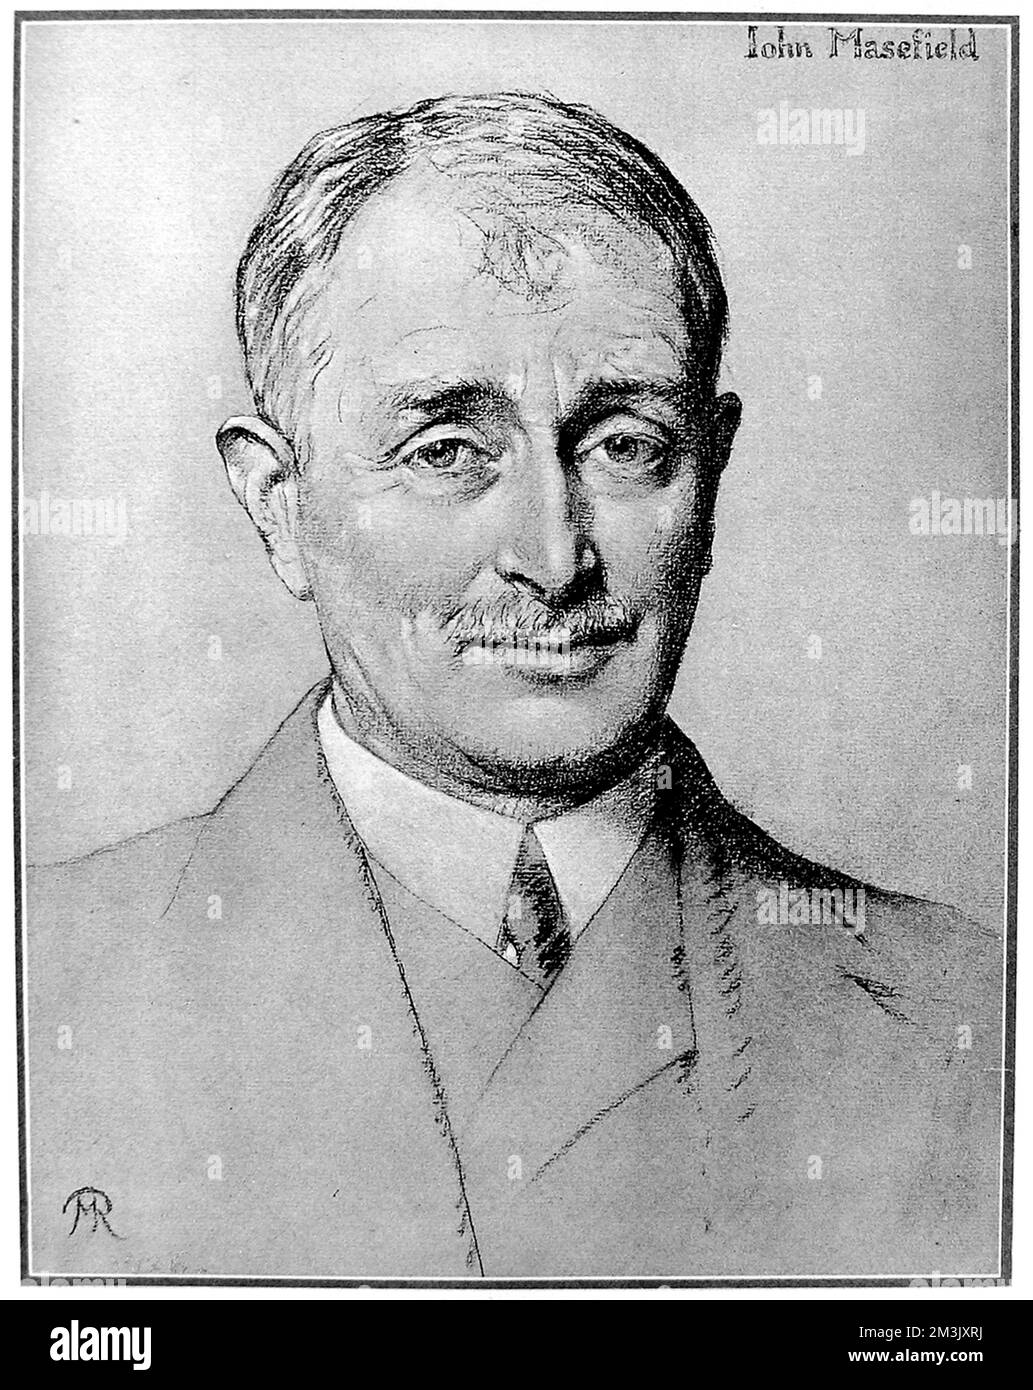 Porträt von John Edward Masefield, dem englischen Dichter und Schriftsteller, gemalt 1930, als er zum Dichter-Laureat ernannt wurde. Datum: 1930 Stockfoto